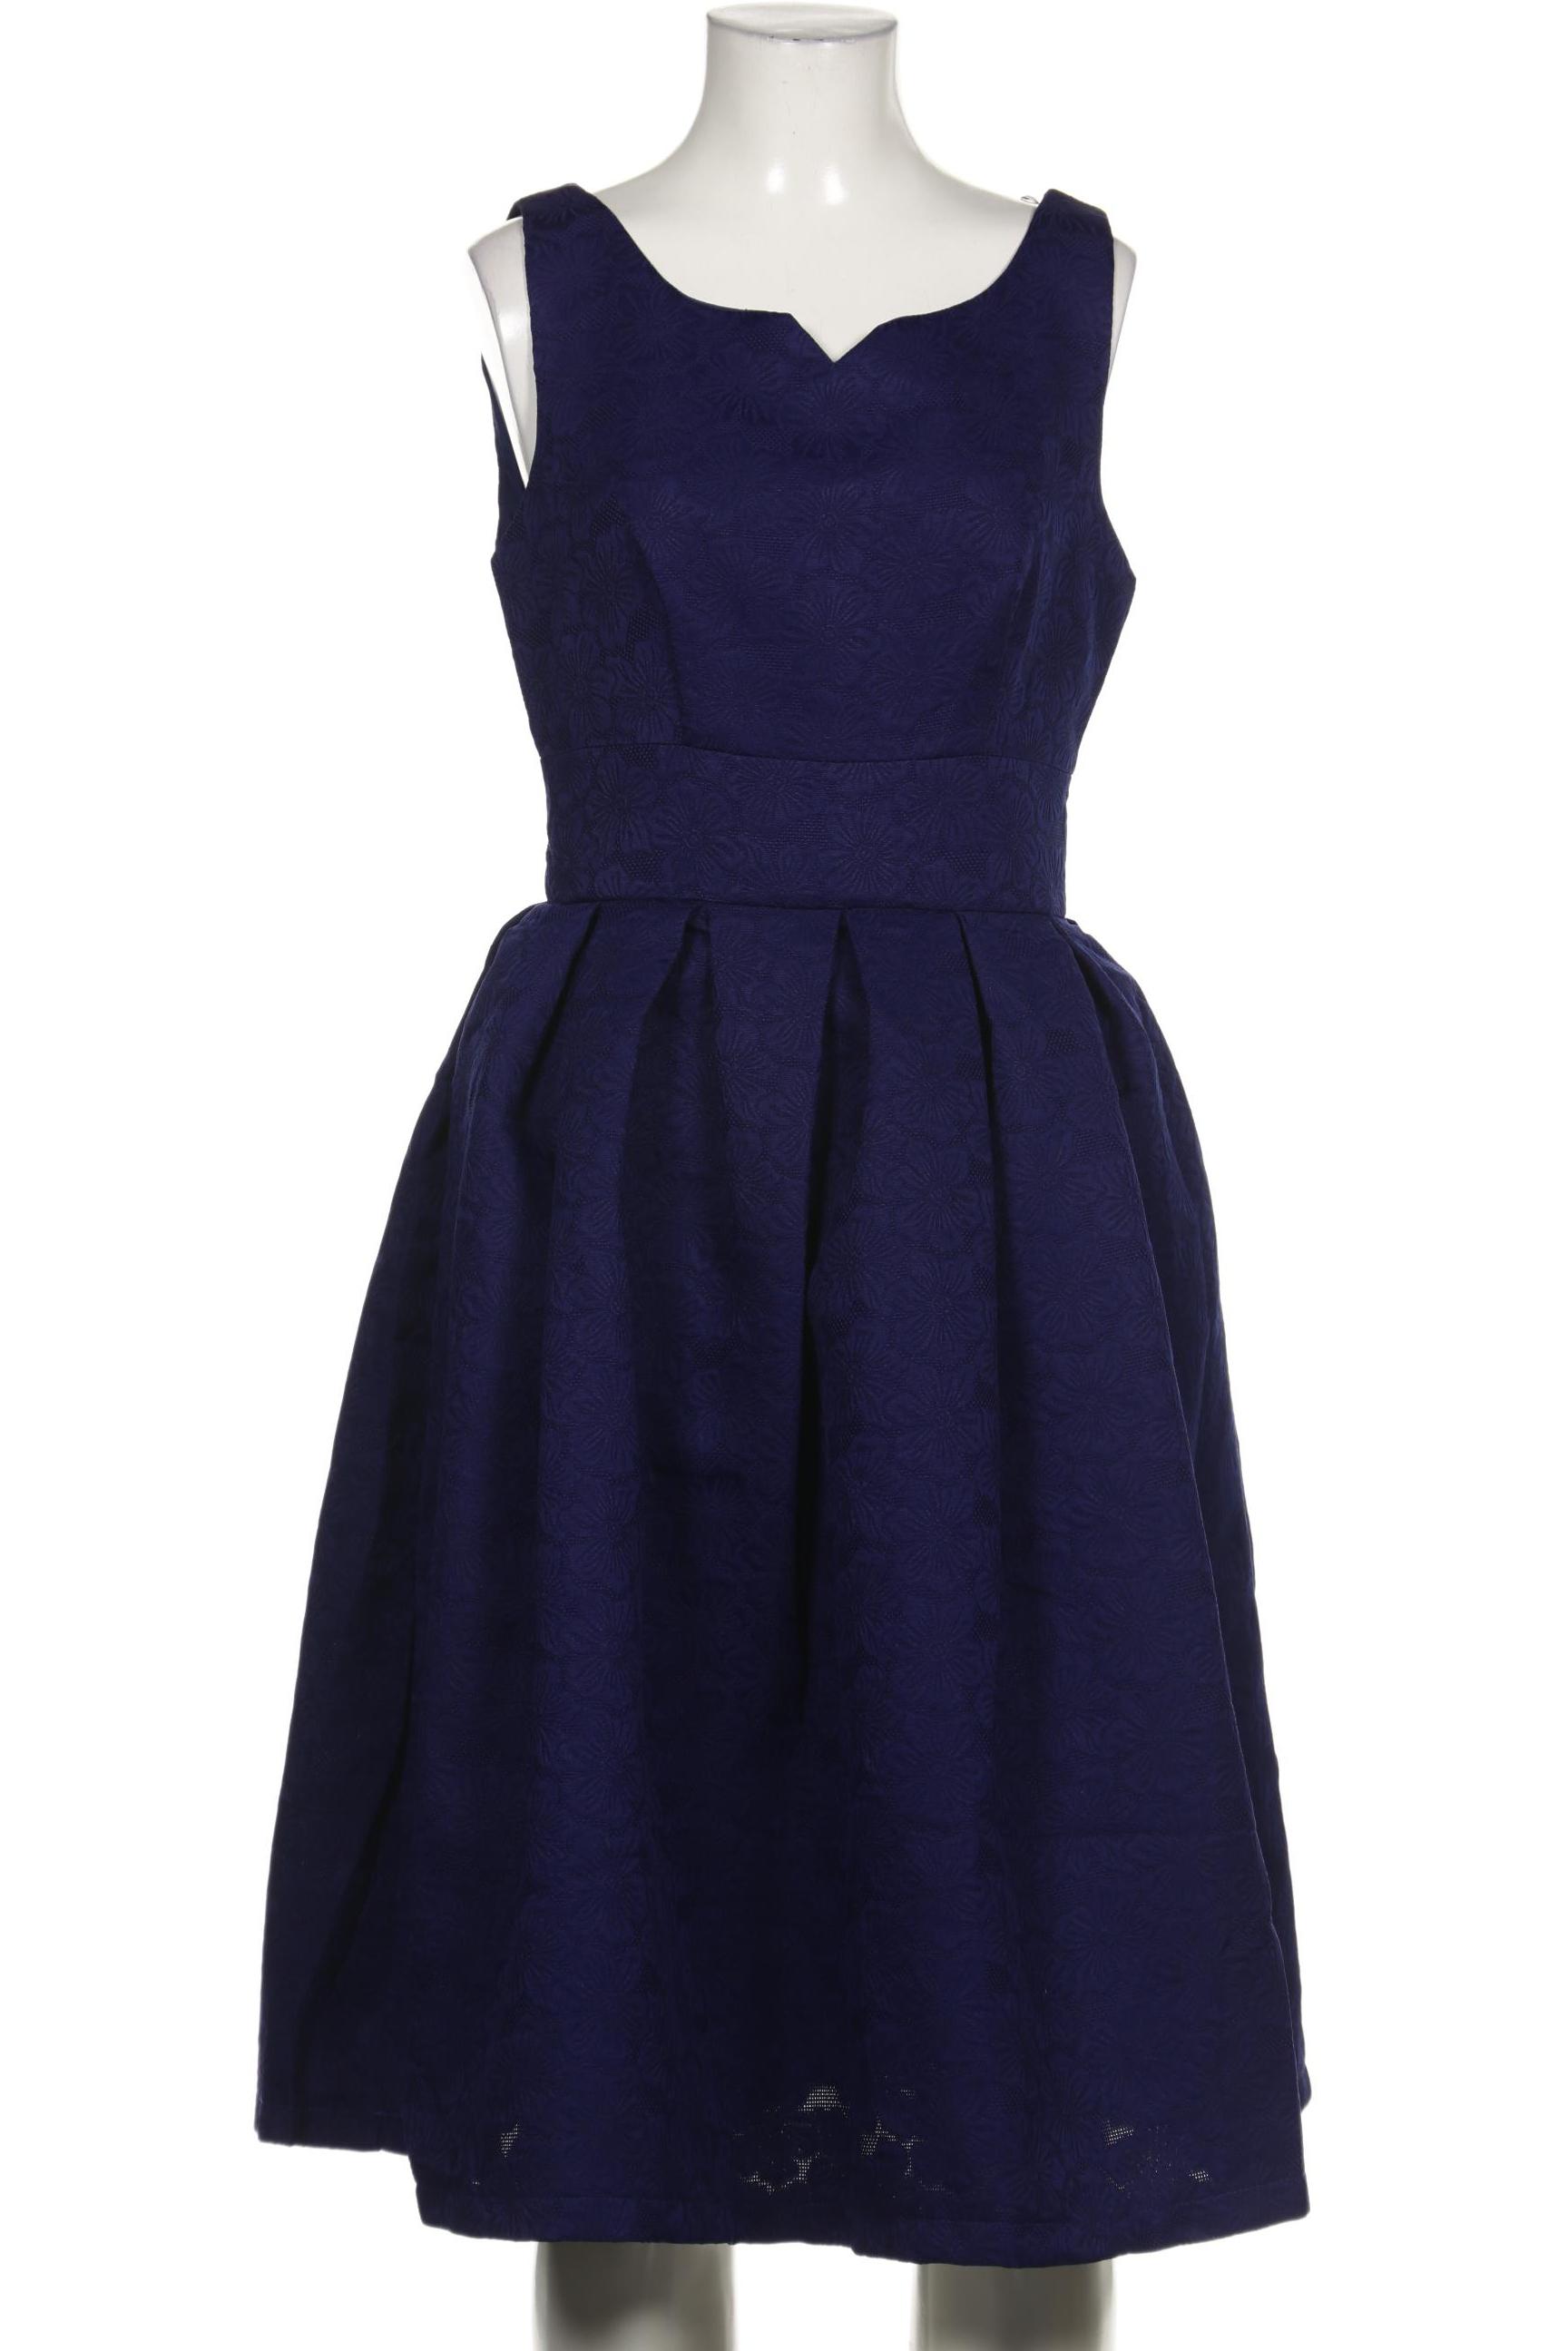 Lindy Bop Damen Kleid, marineblau, Gr. 36 von lindy bop